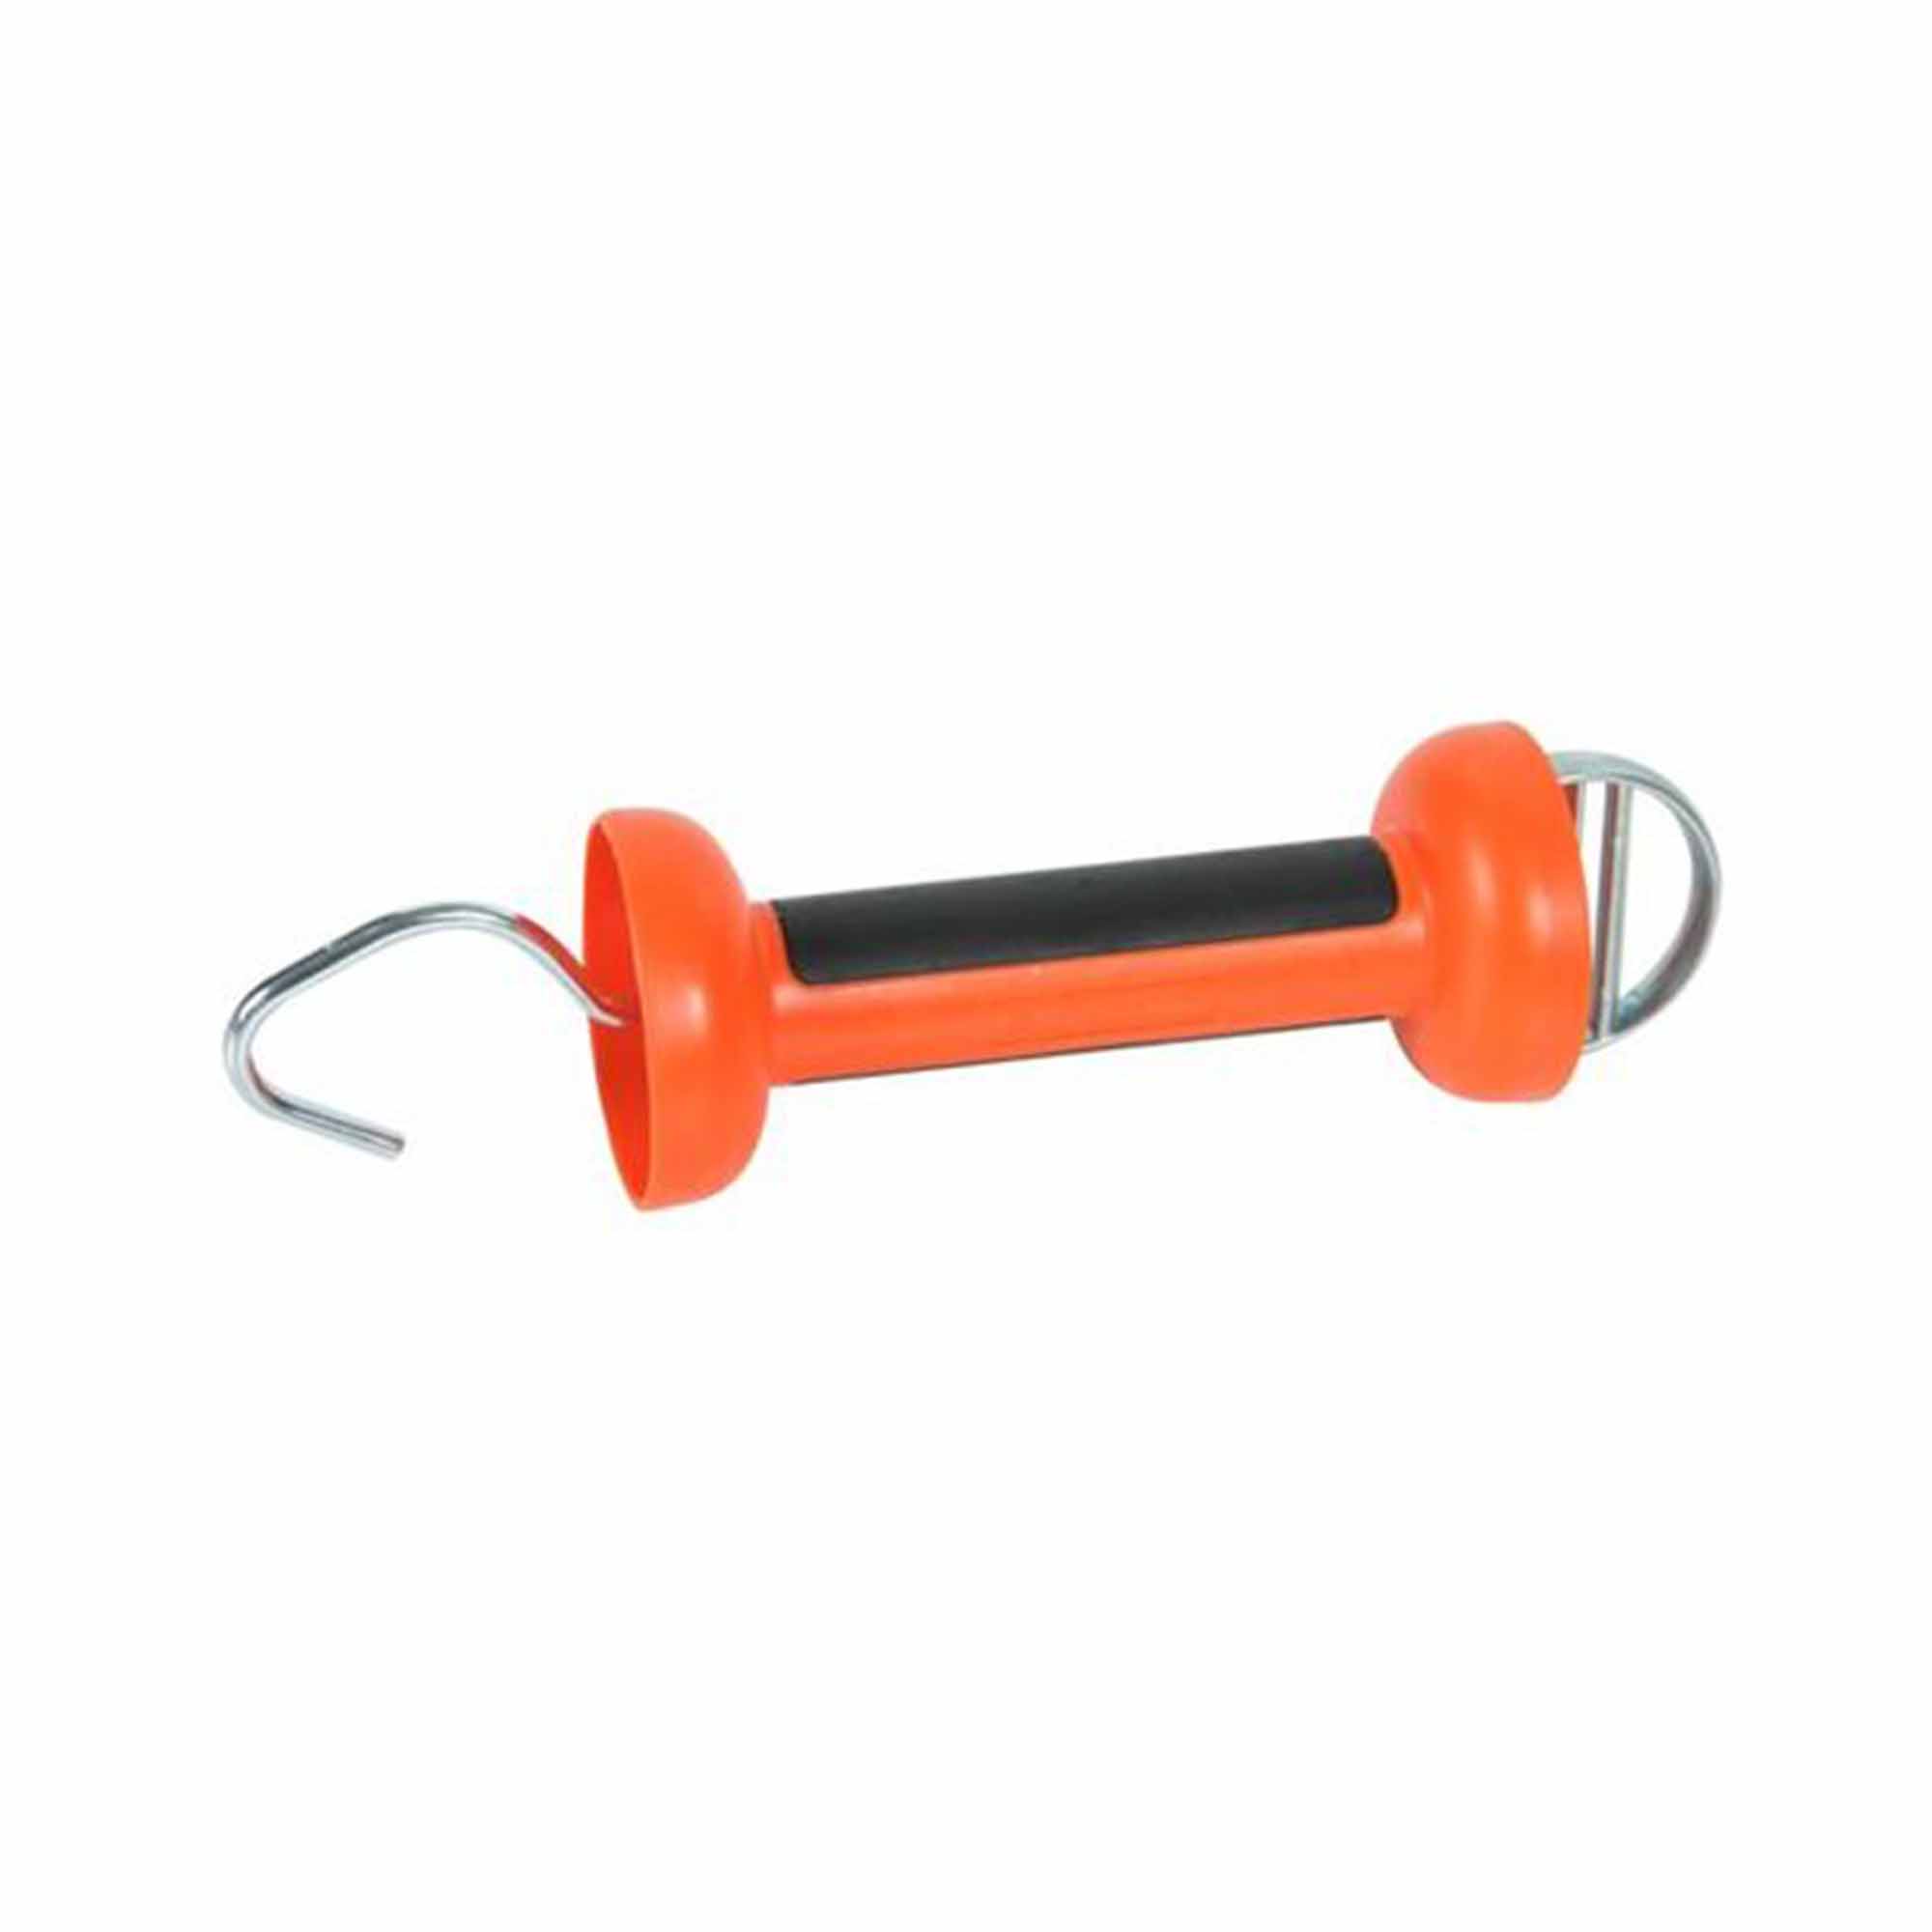 Orange Insul-Grip handle